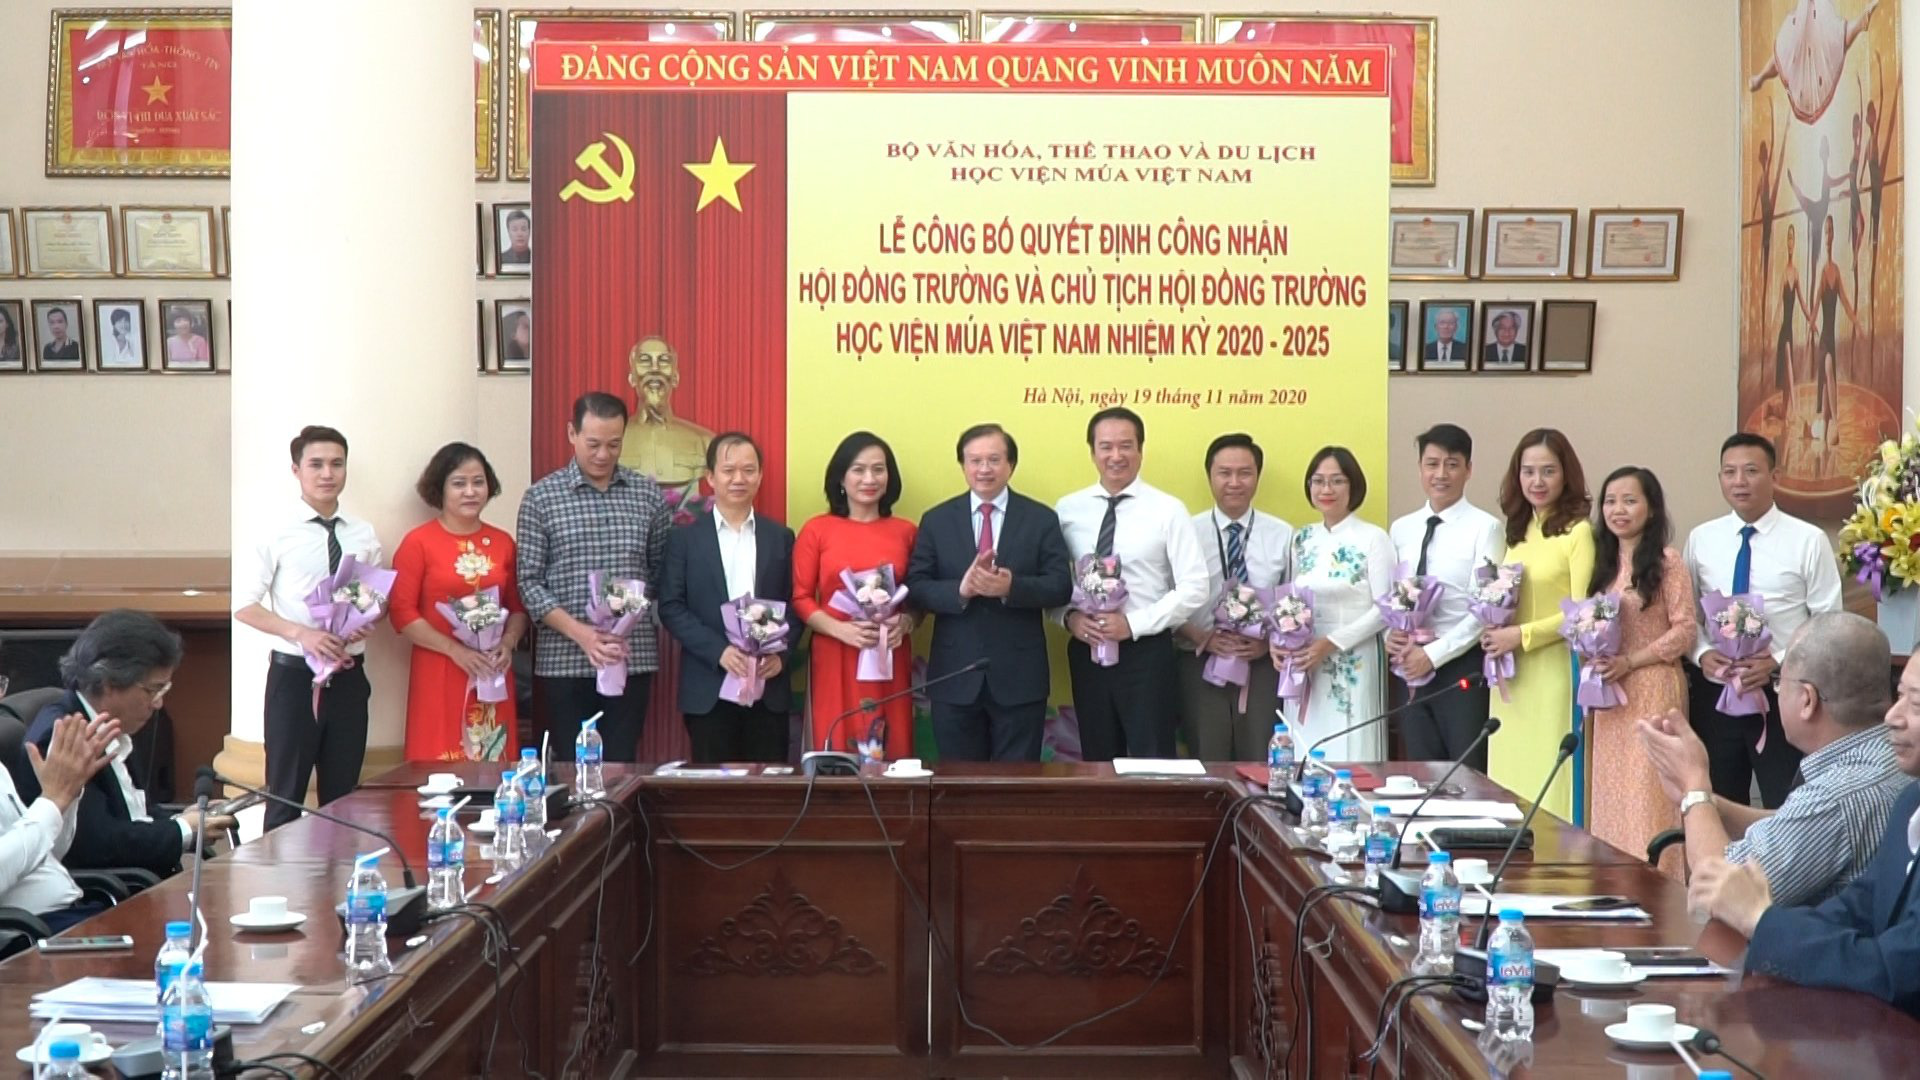 Công bố quyết định thành lập Hội đồng trường Đại học Sân khấu - Điện ảnh và Học viện Múa Việt Nam - Ảnh 4.